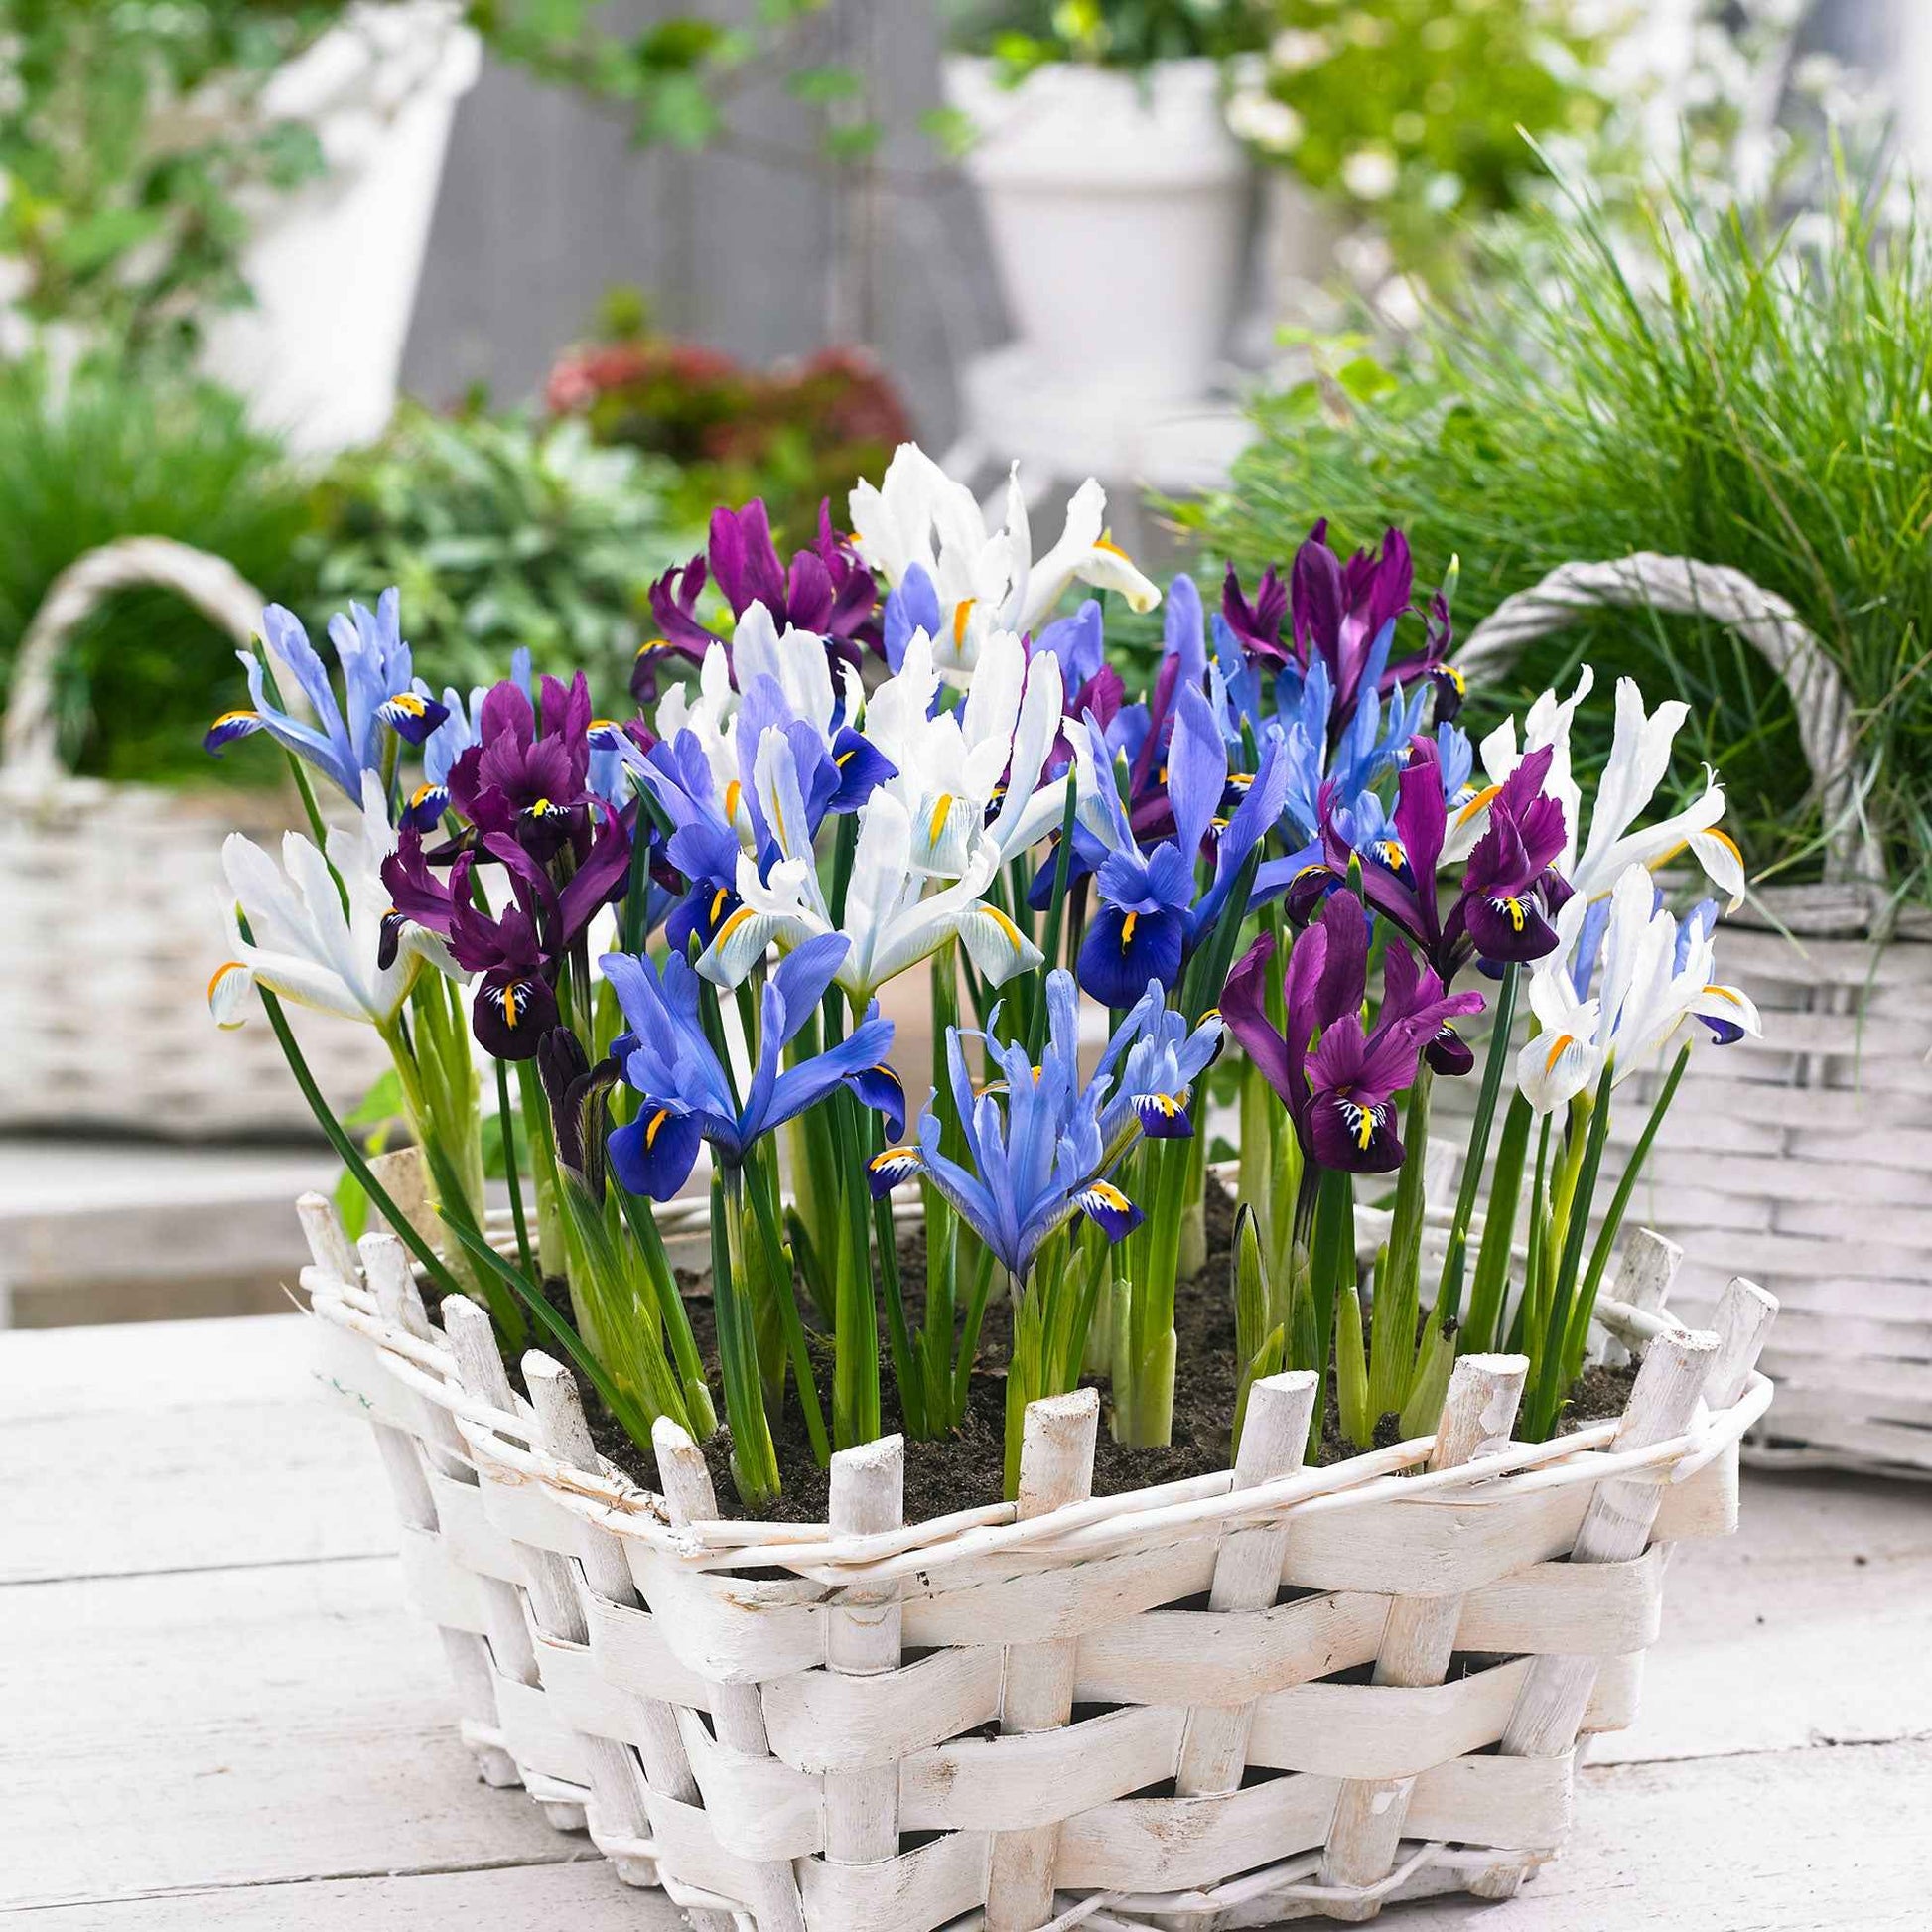 25x Holländische Iris - Mischung 'Sunshine' blau-lila-weiβ - Bienen- und schmetterlingsfreundliche Pflanzen